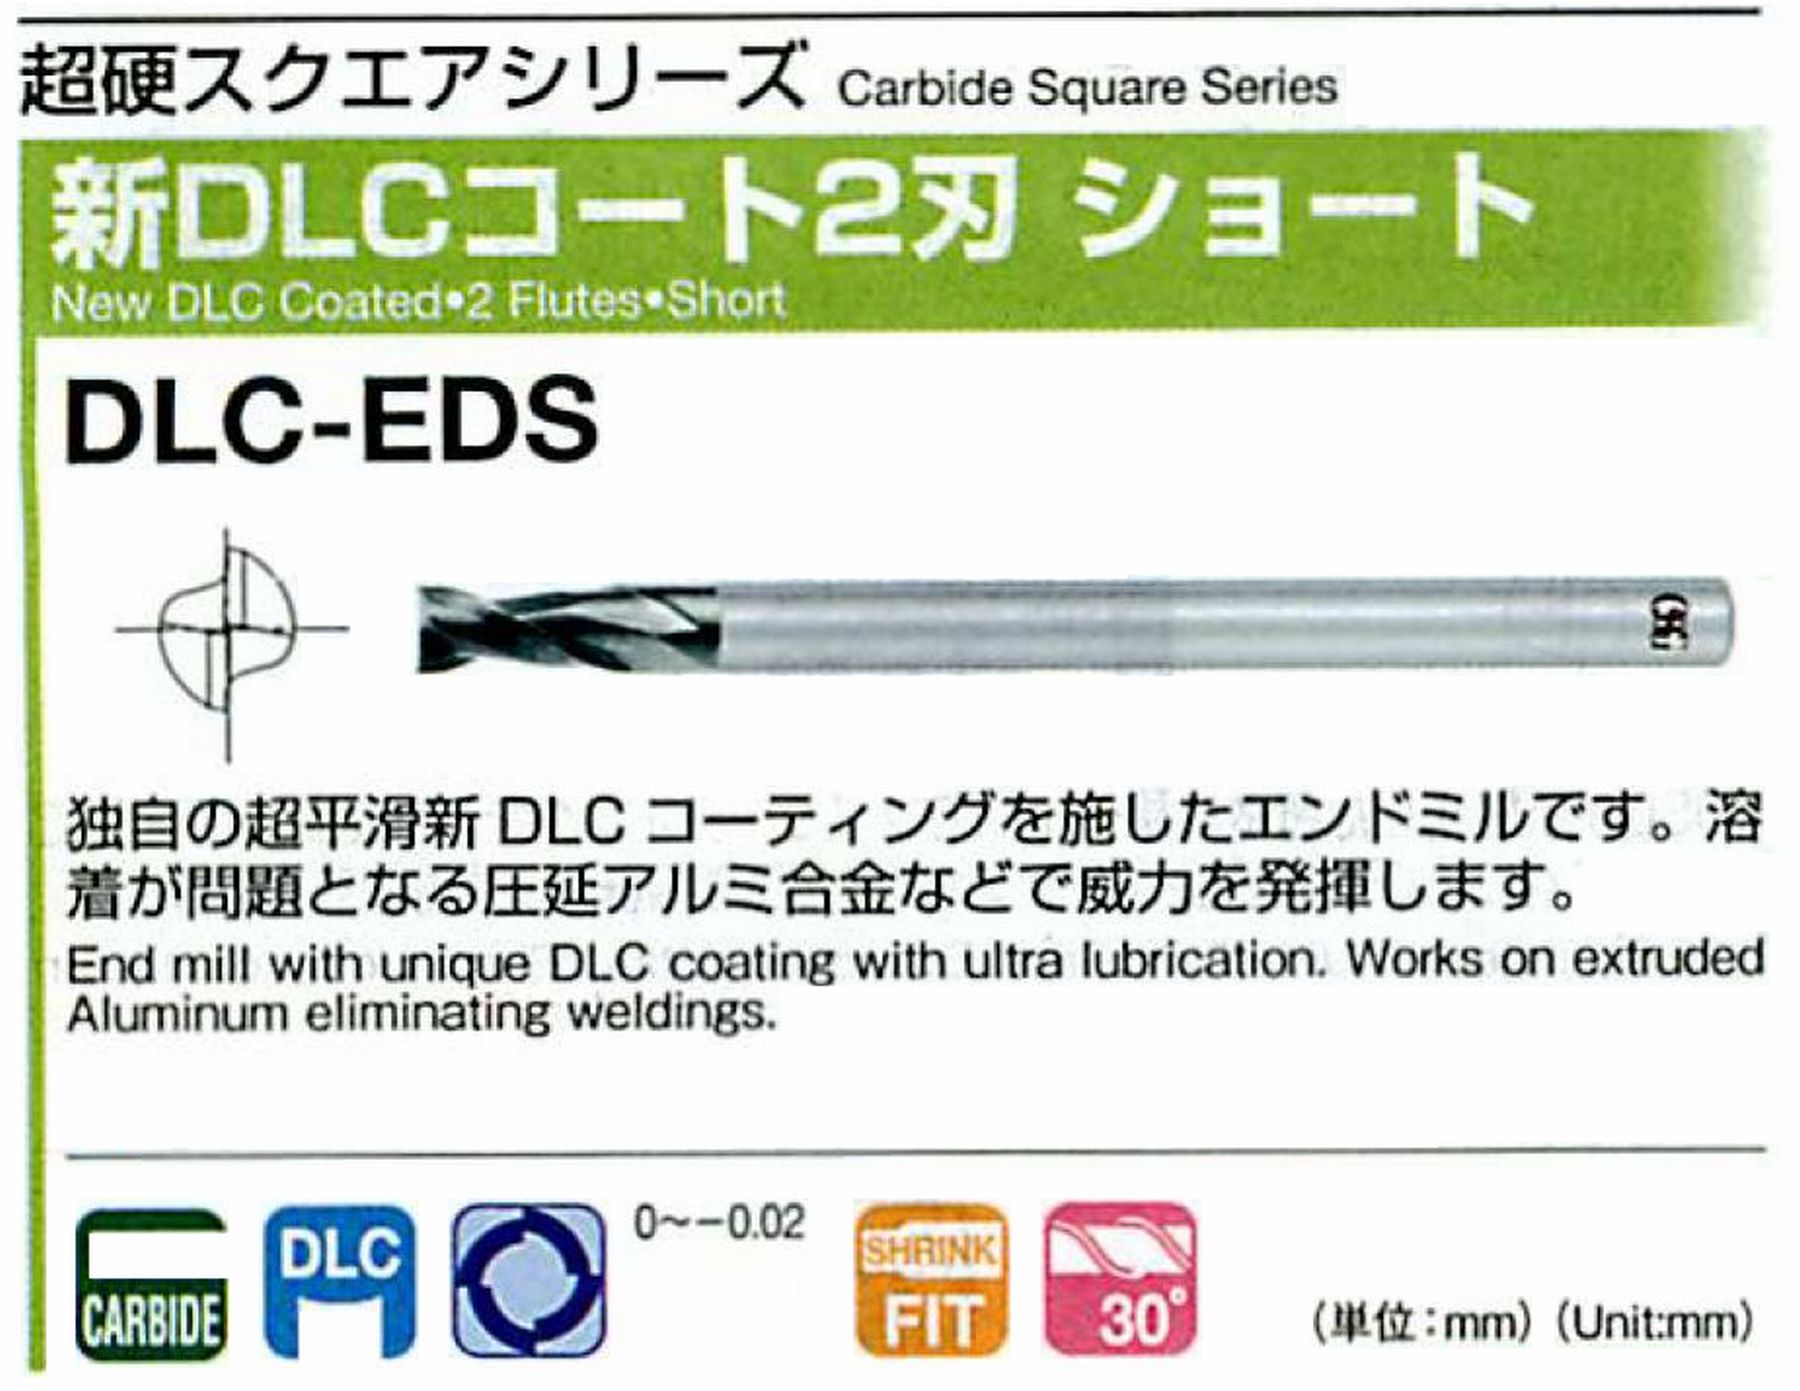 オーエスジー/OSG 新DLCコート 2刃ショート DLC-EDS 外径11 全長75 刃長22 シャンク径12mm